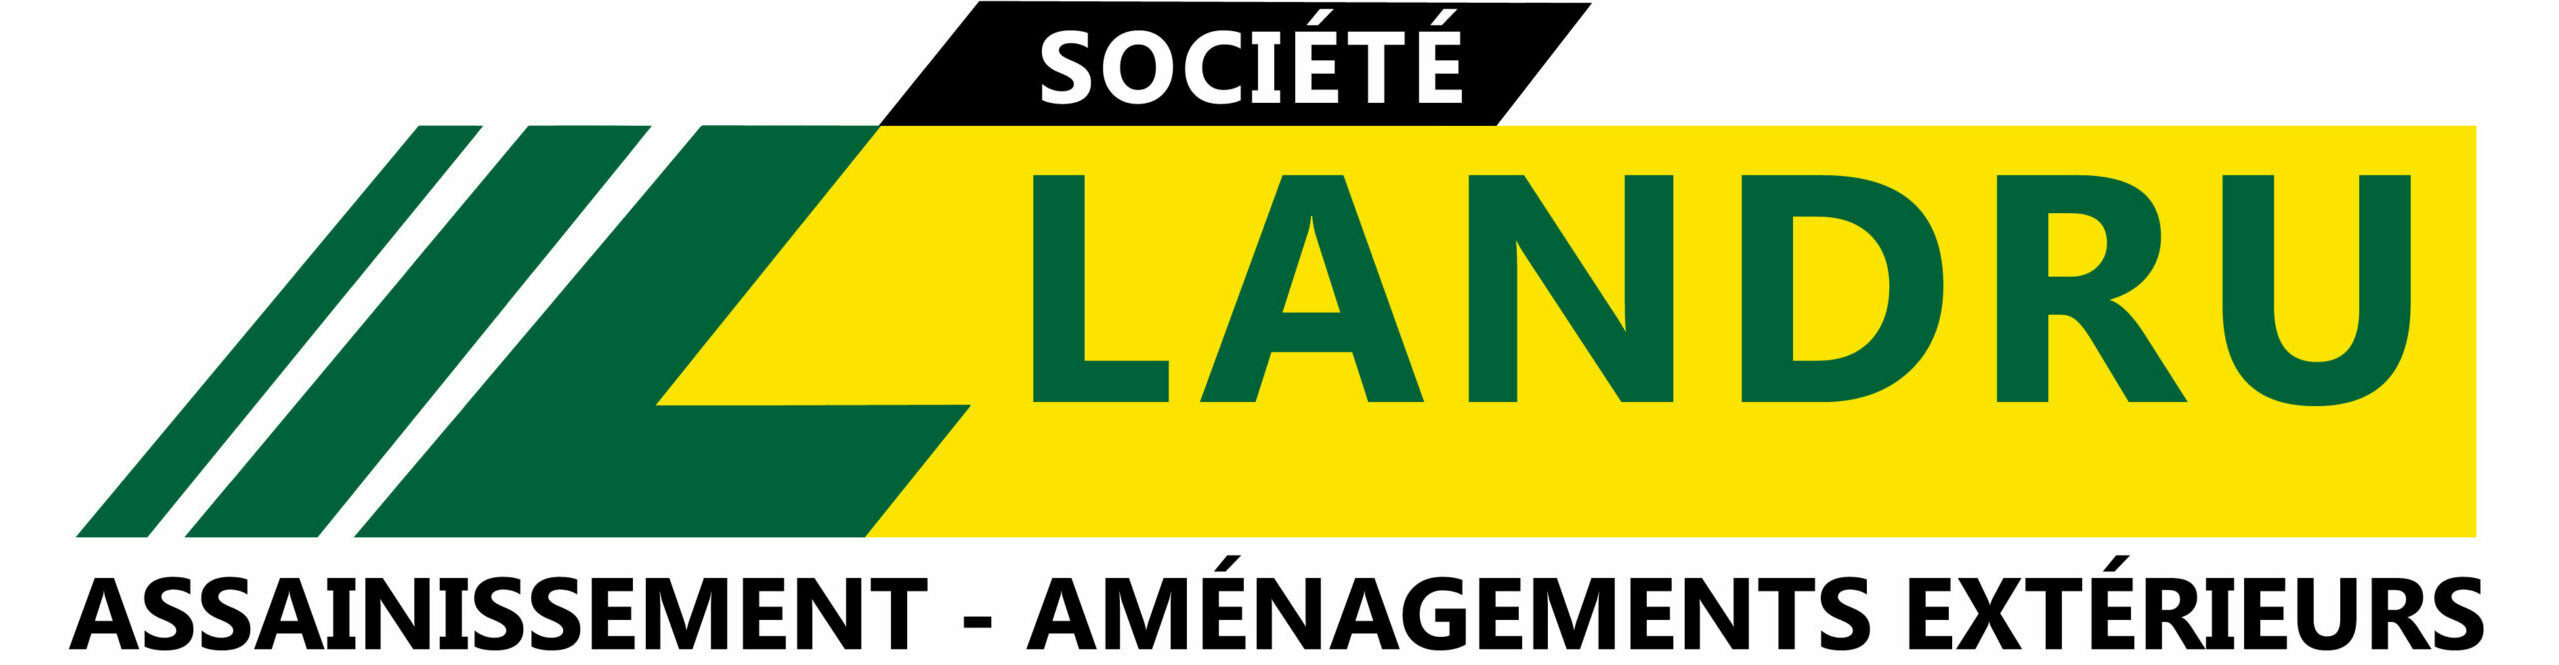 Société Landru